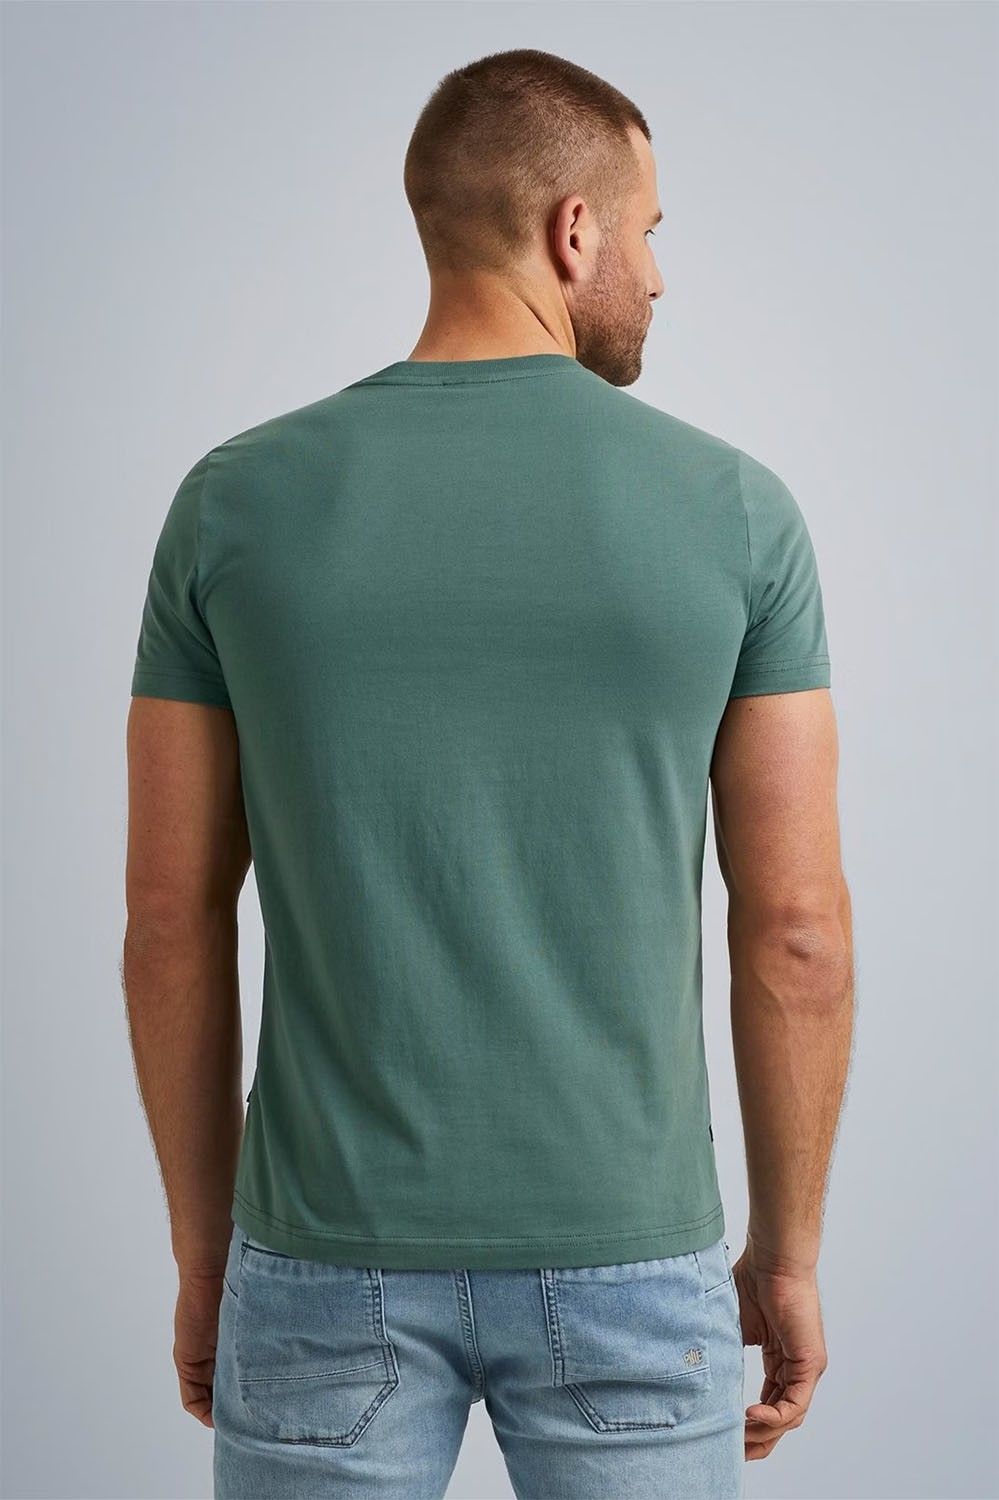 Pme Legend T-Shirt Groen